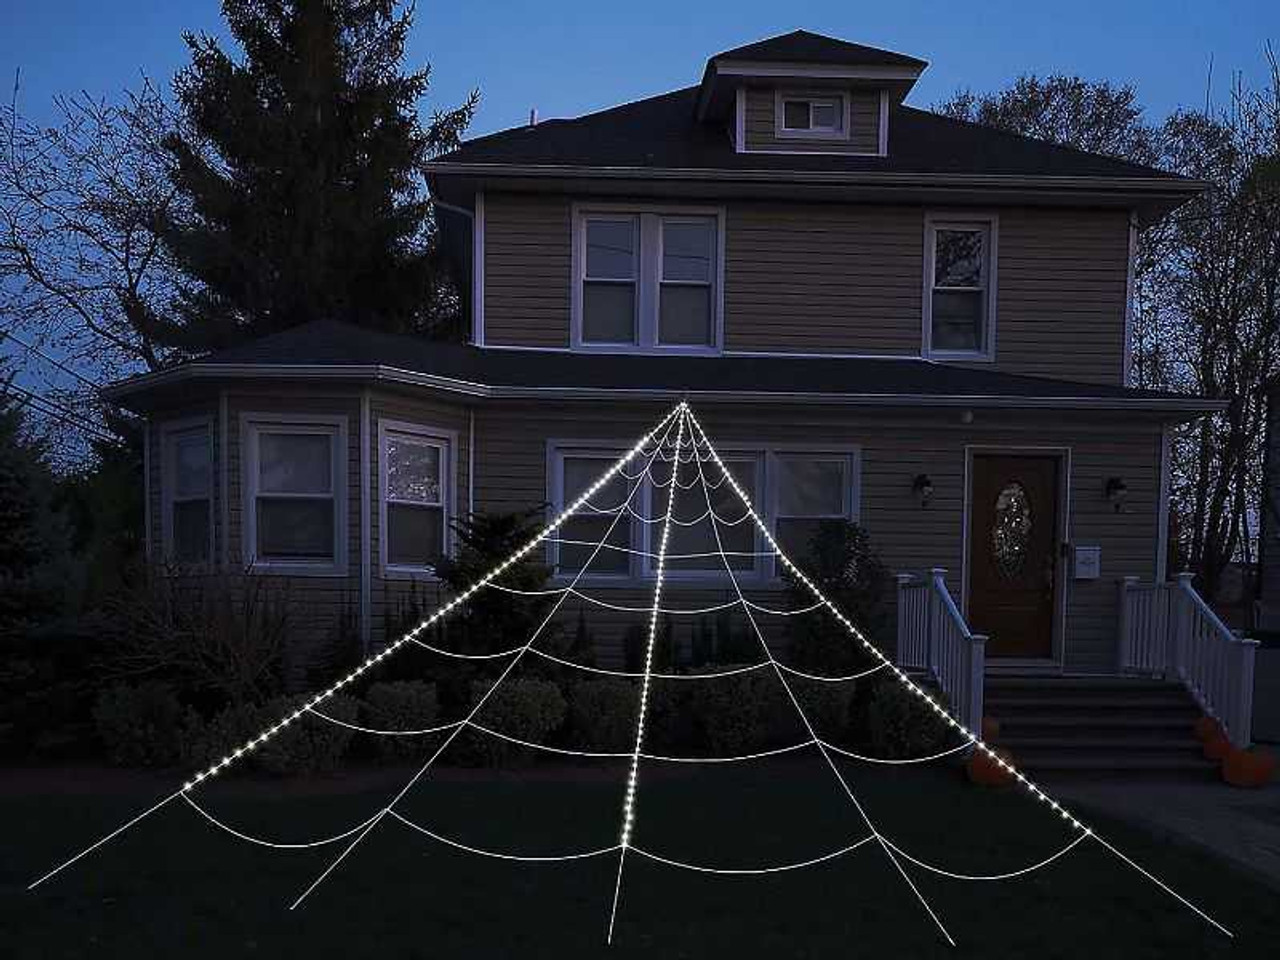 Spider Web Yard Light-Up 12ft